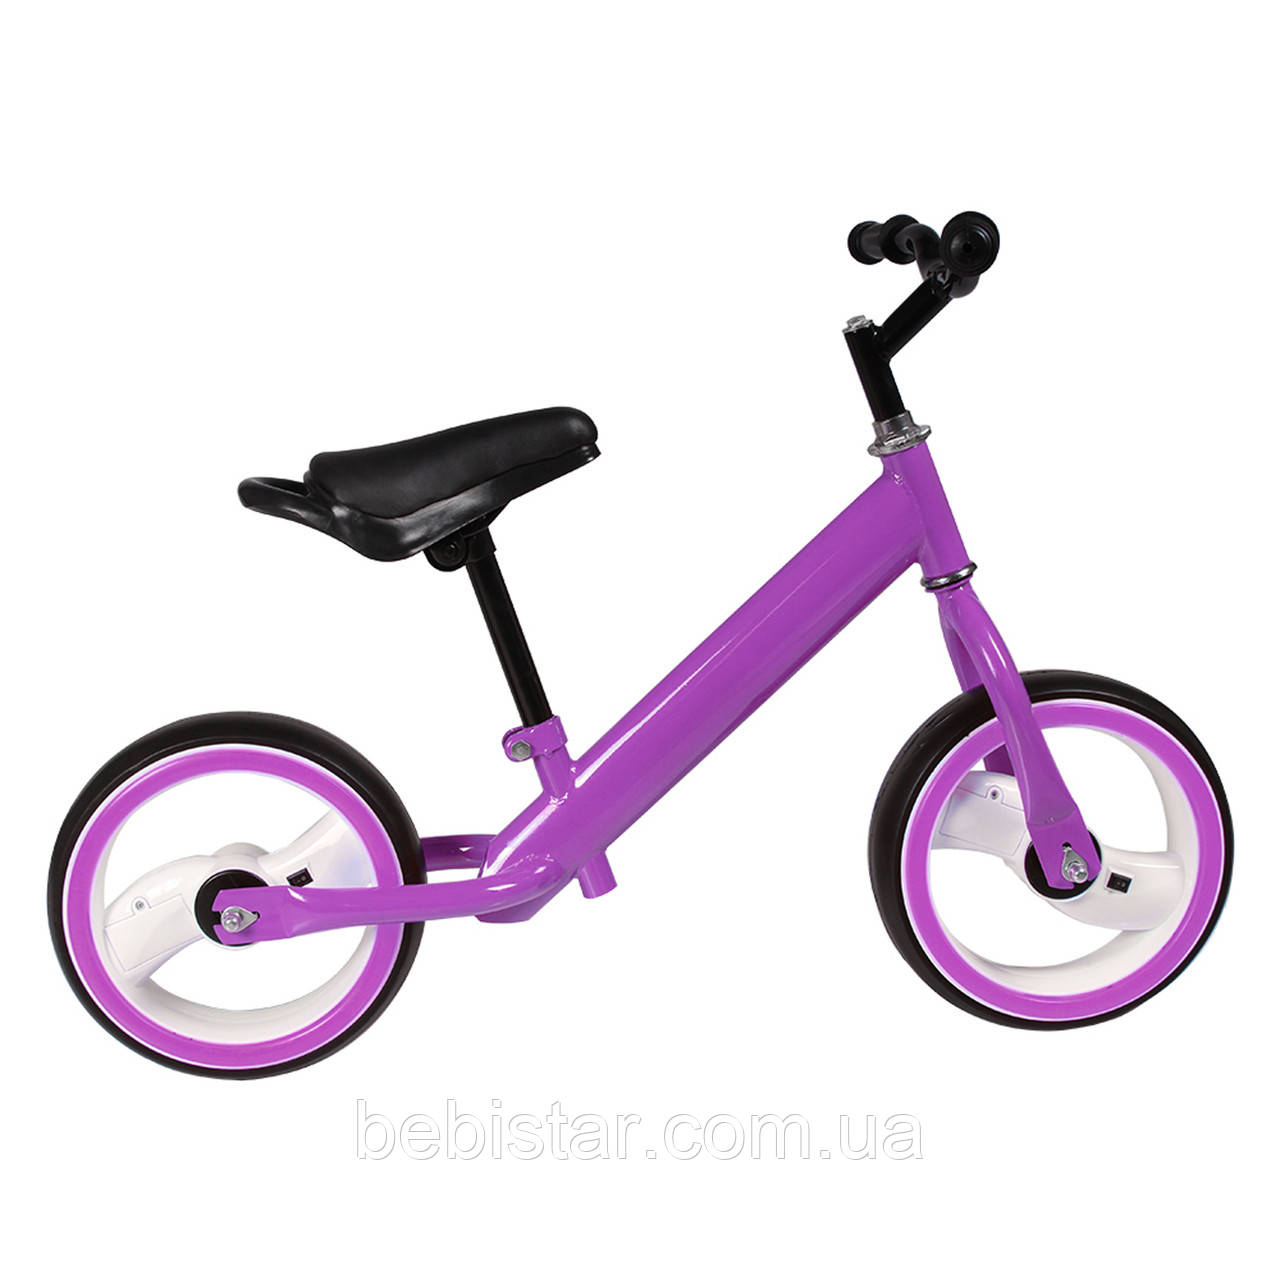 Беговел фиолетовый TILLY 12" T-212515 Purple EVA светящиеся колеса для деток 2-4 года